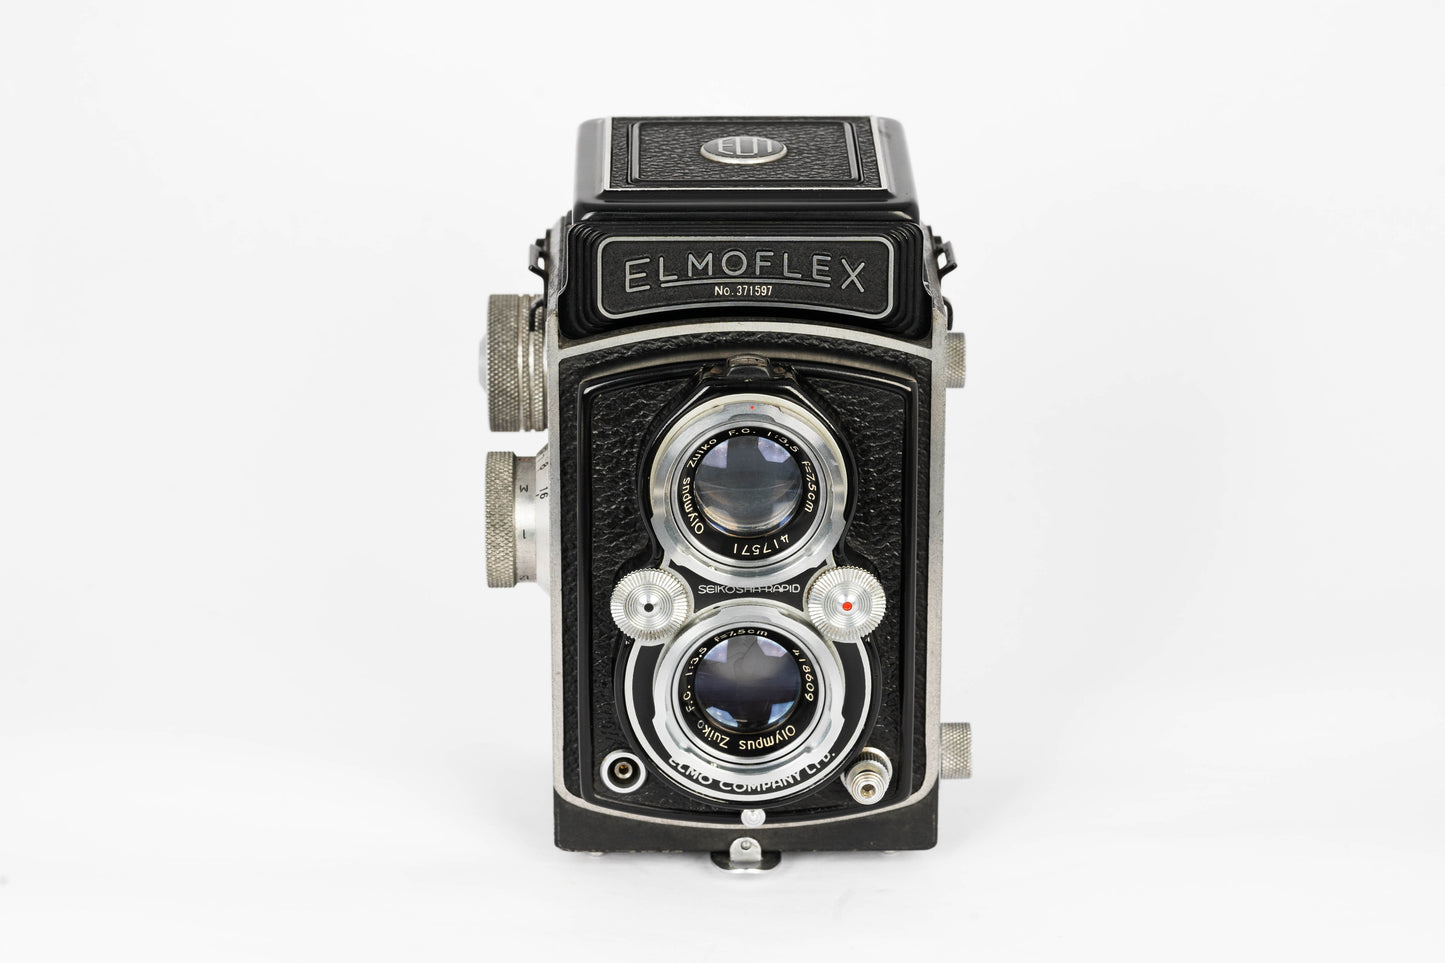 Elmoflex 6x6 TLR Film Camera Olympus Zuiko 75mm F/3.5